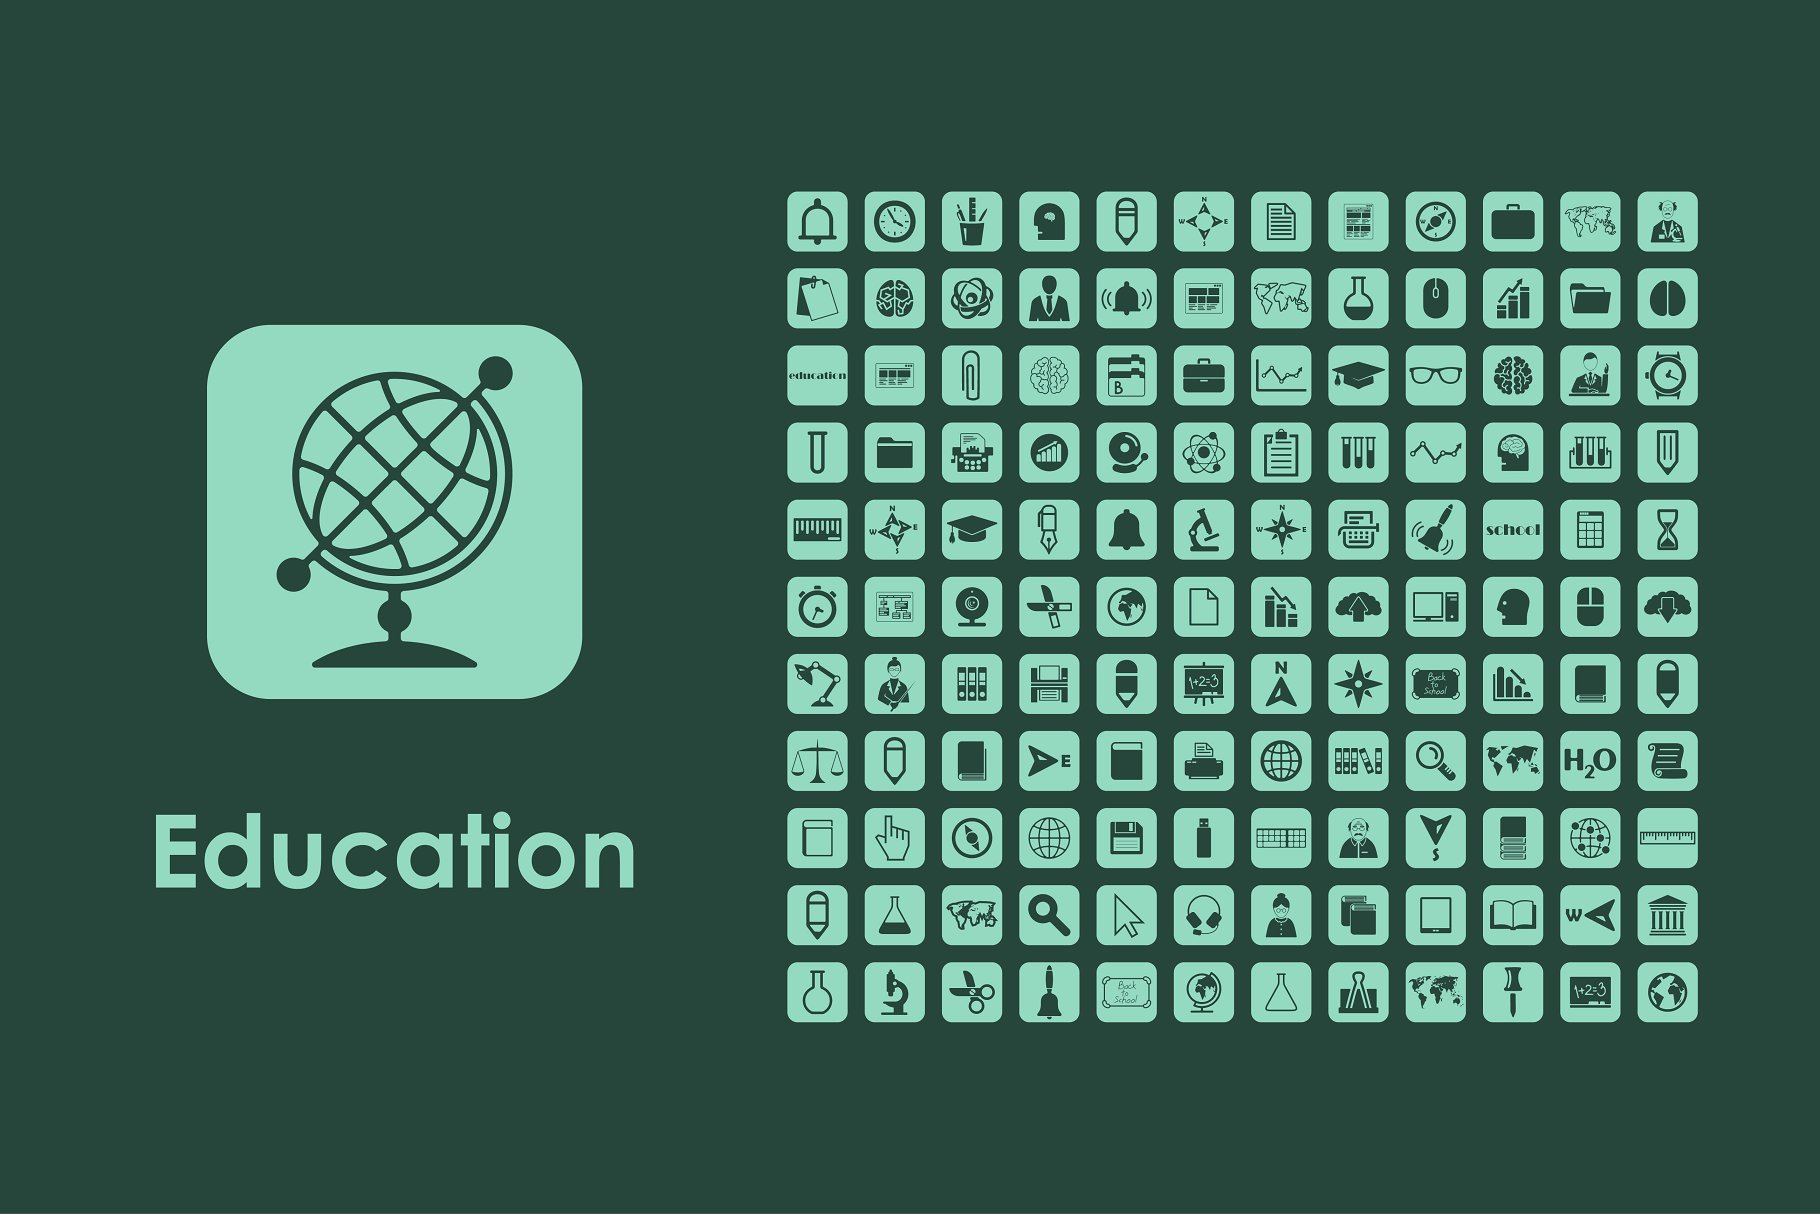 教育主题图标 Education icons #139764